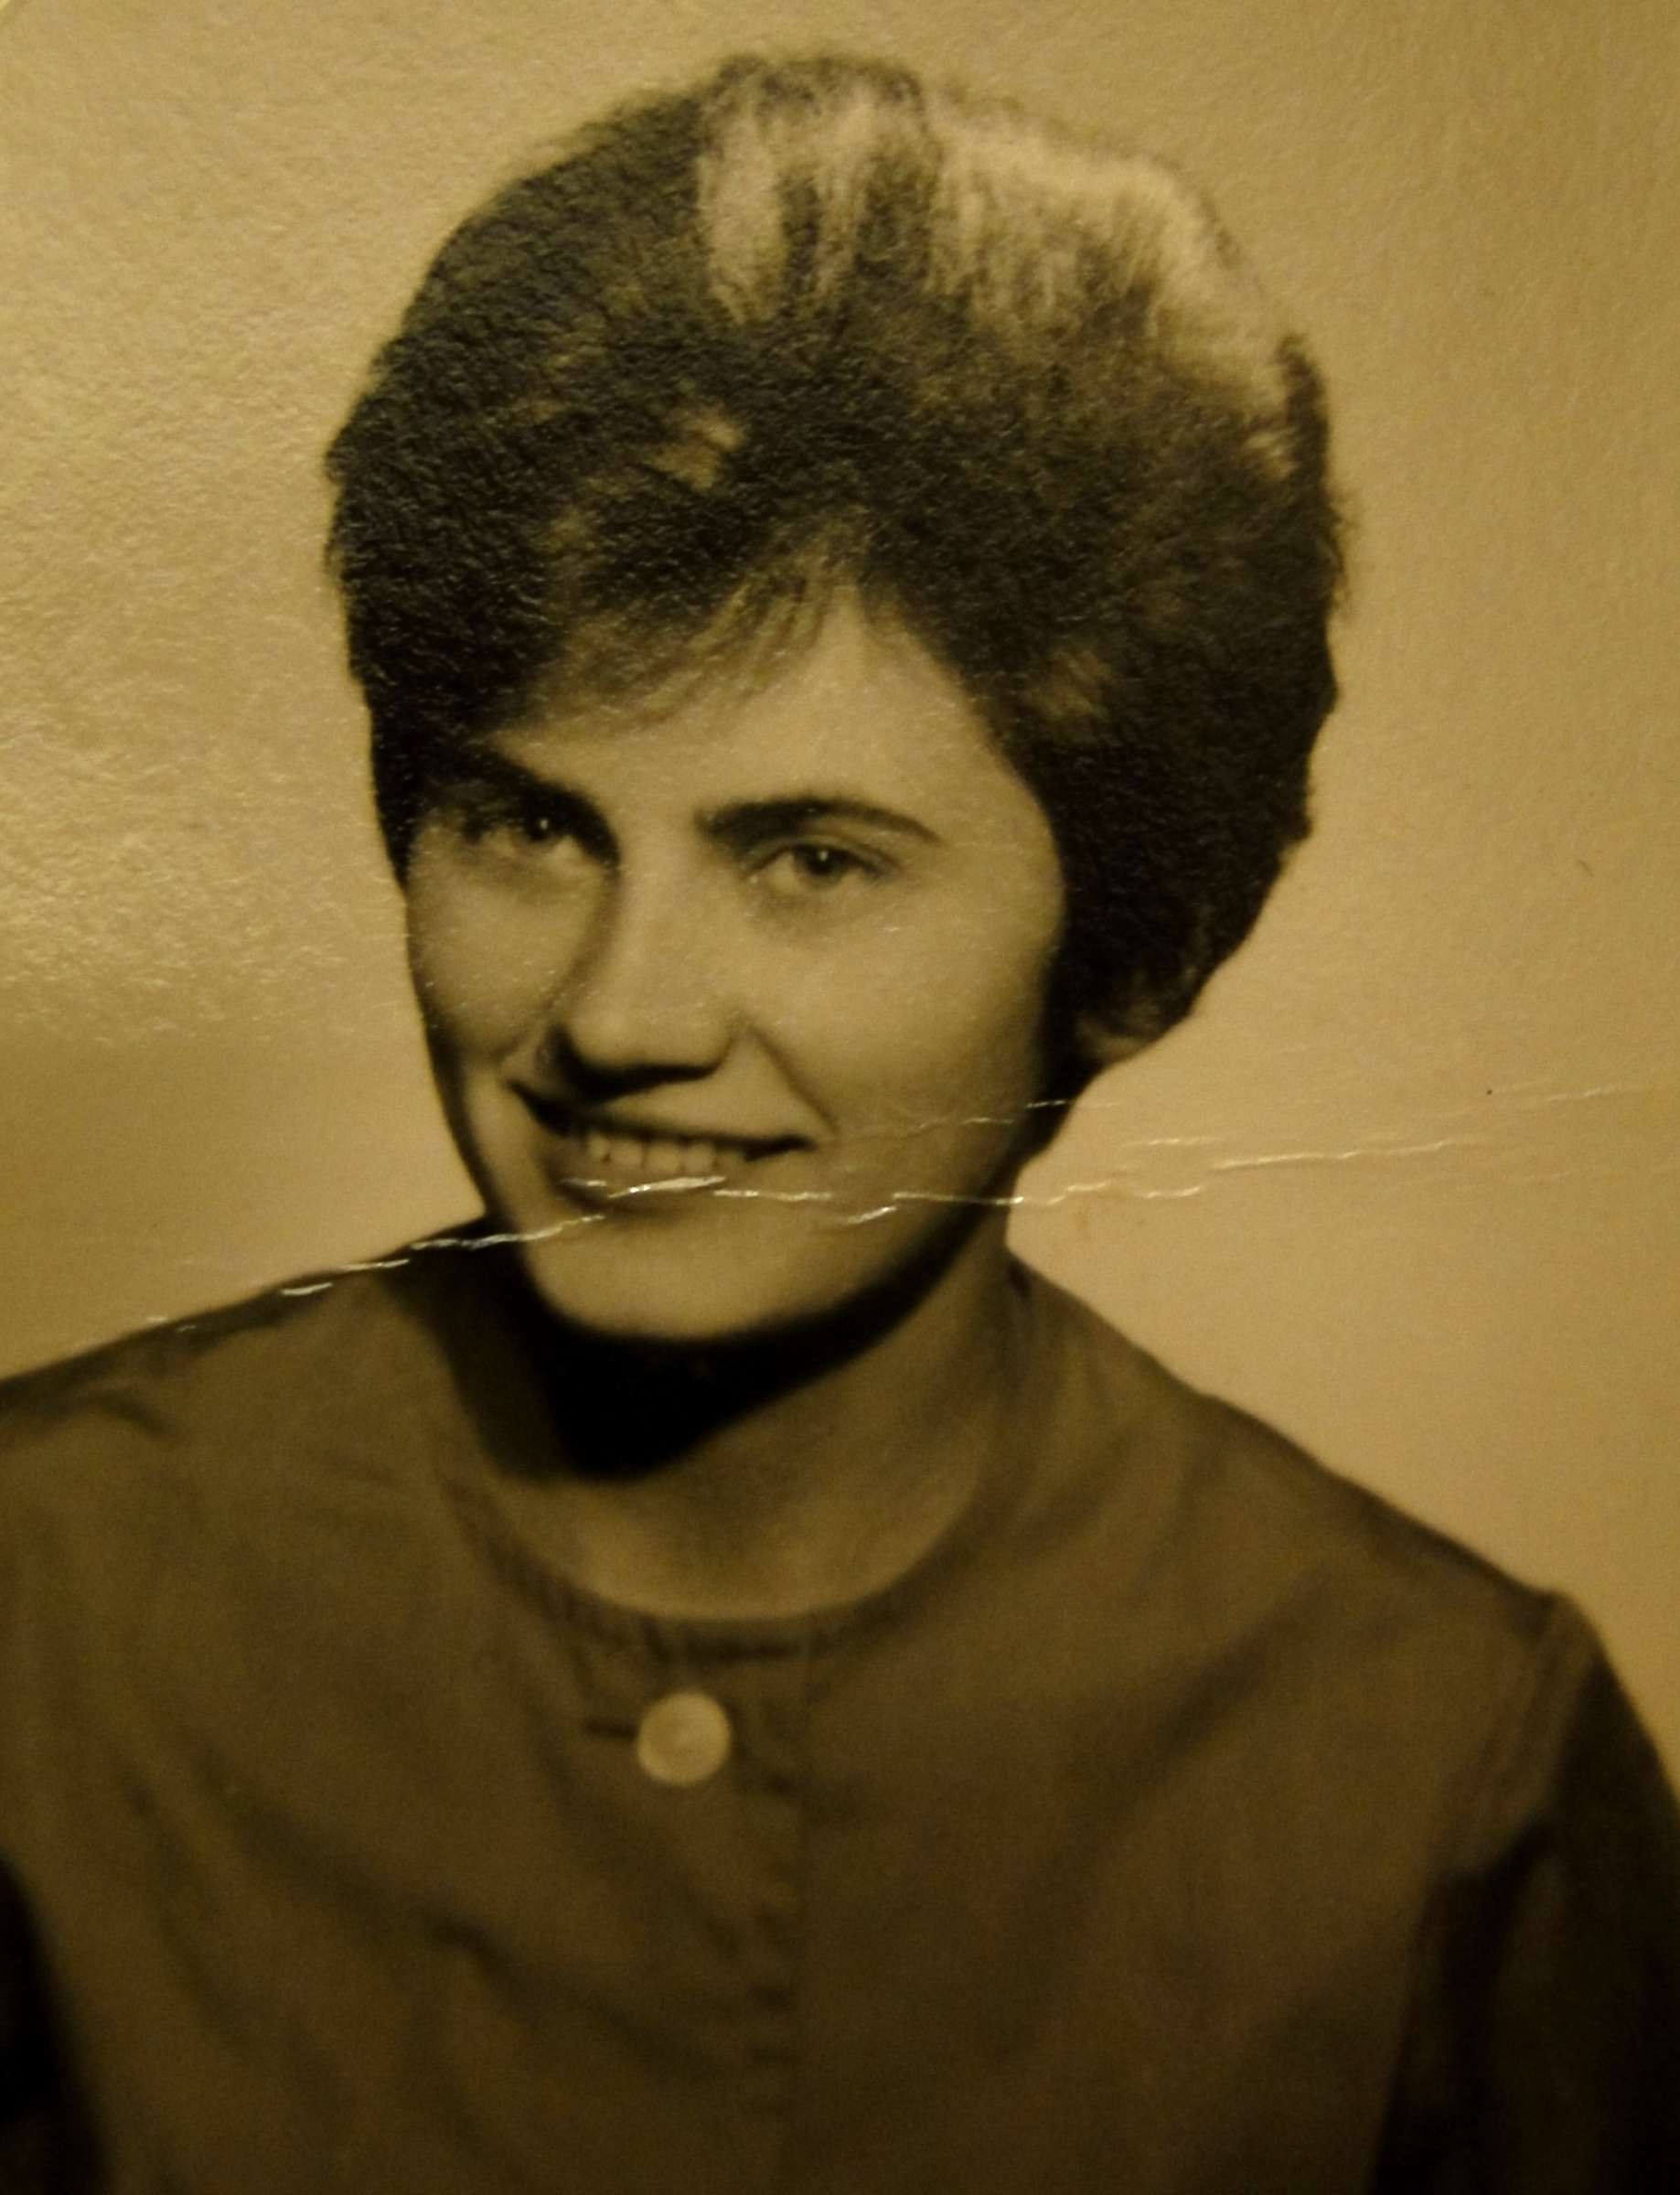 Zdena as a young woman, Kraslice region, around 1960